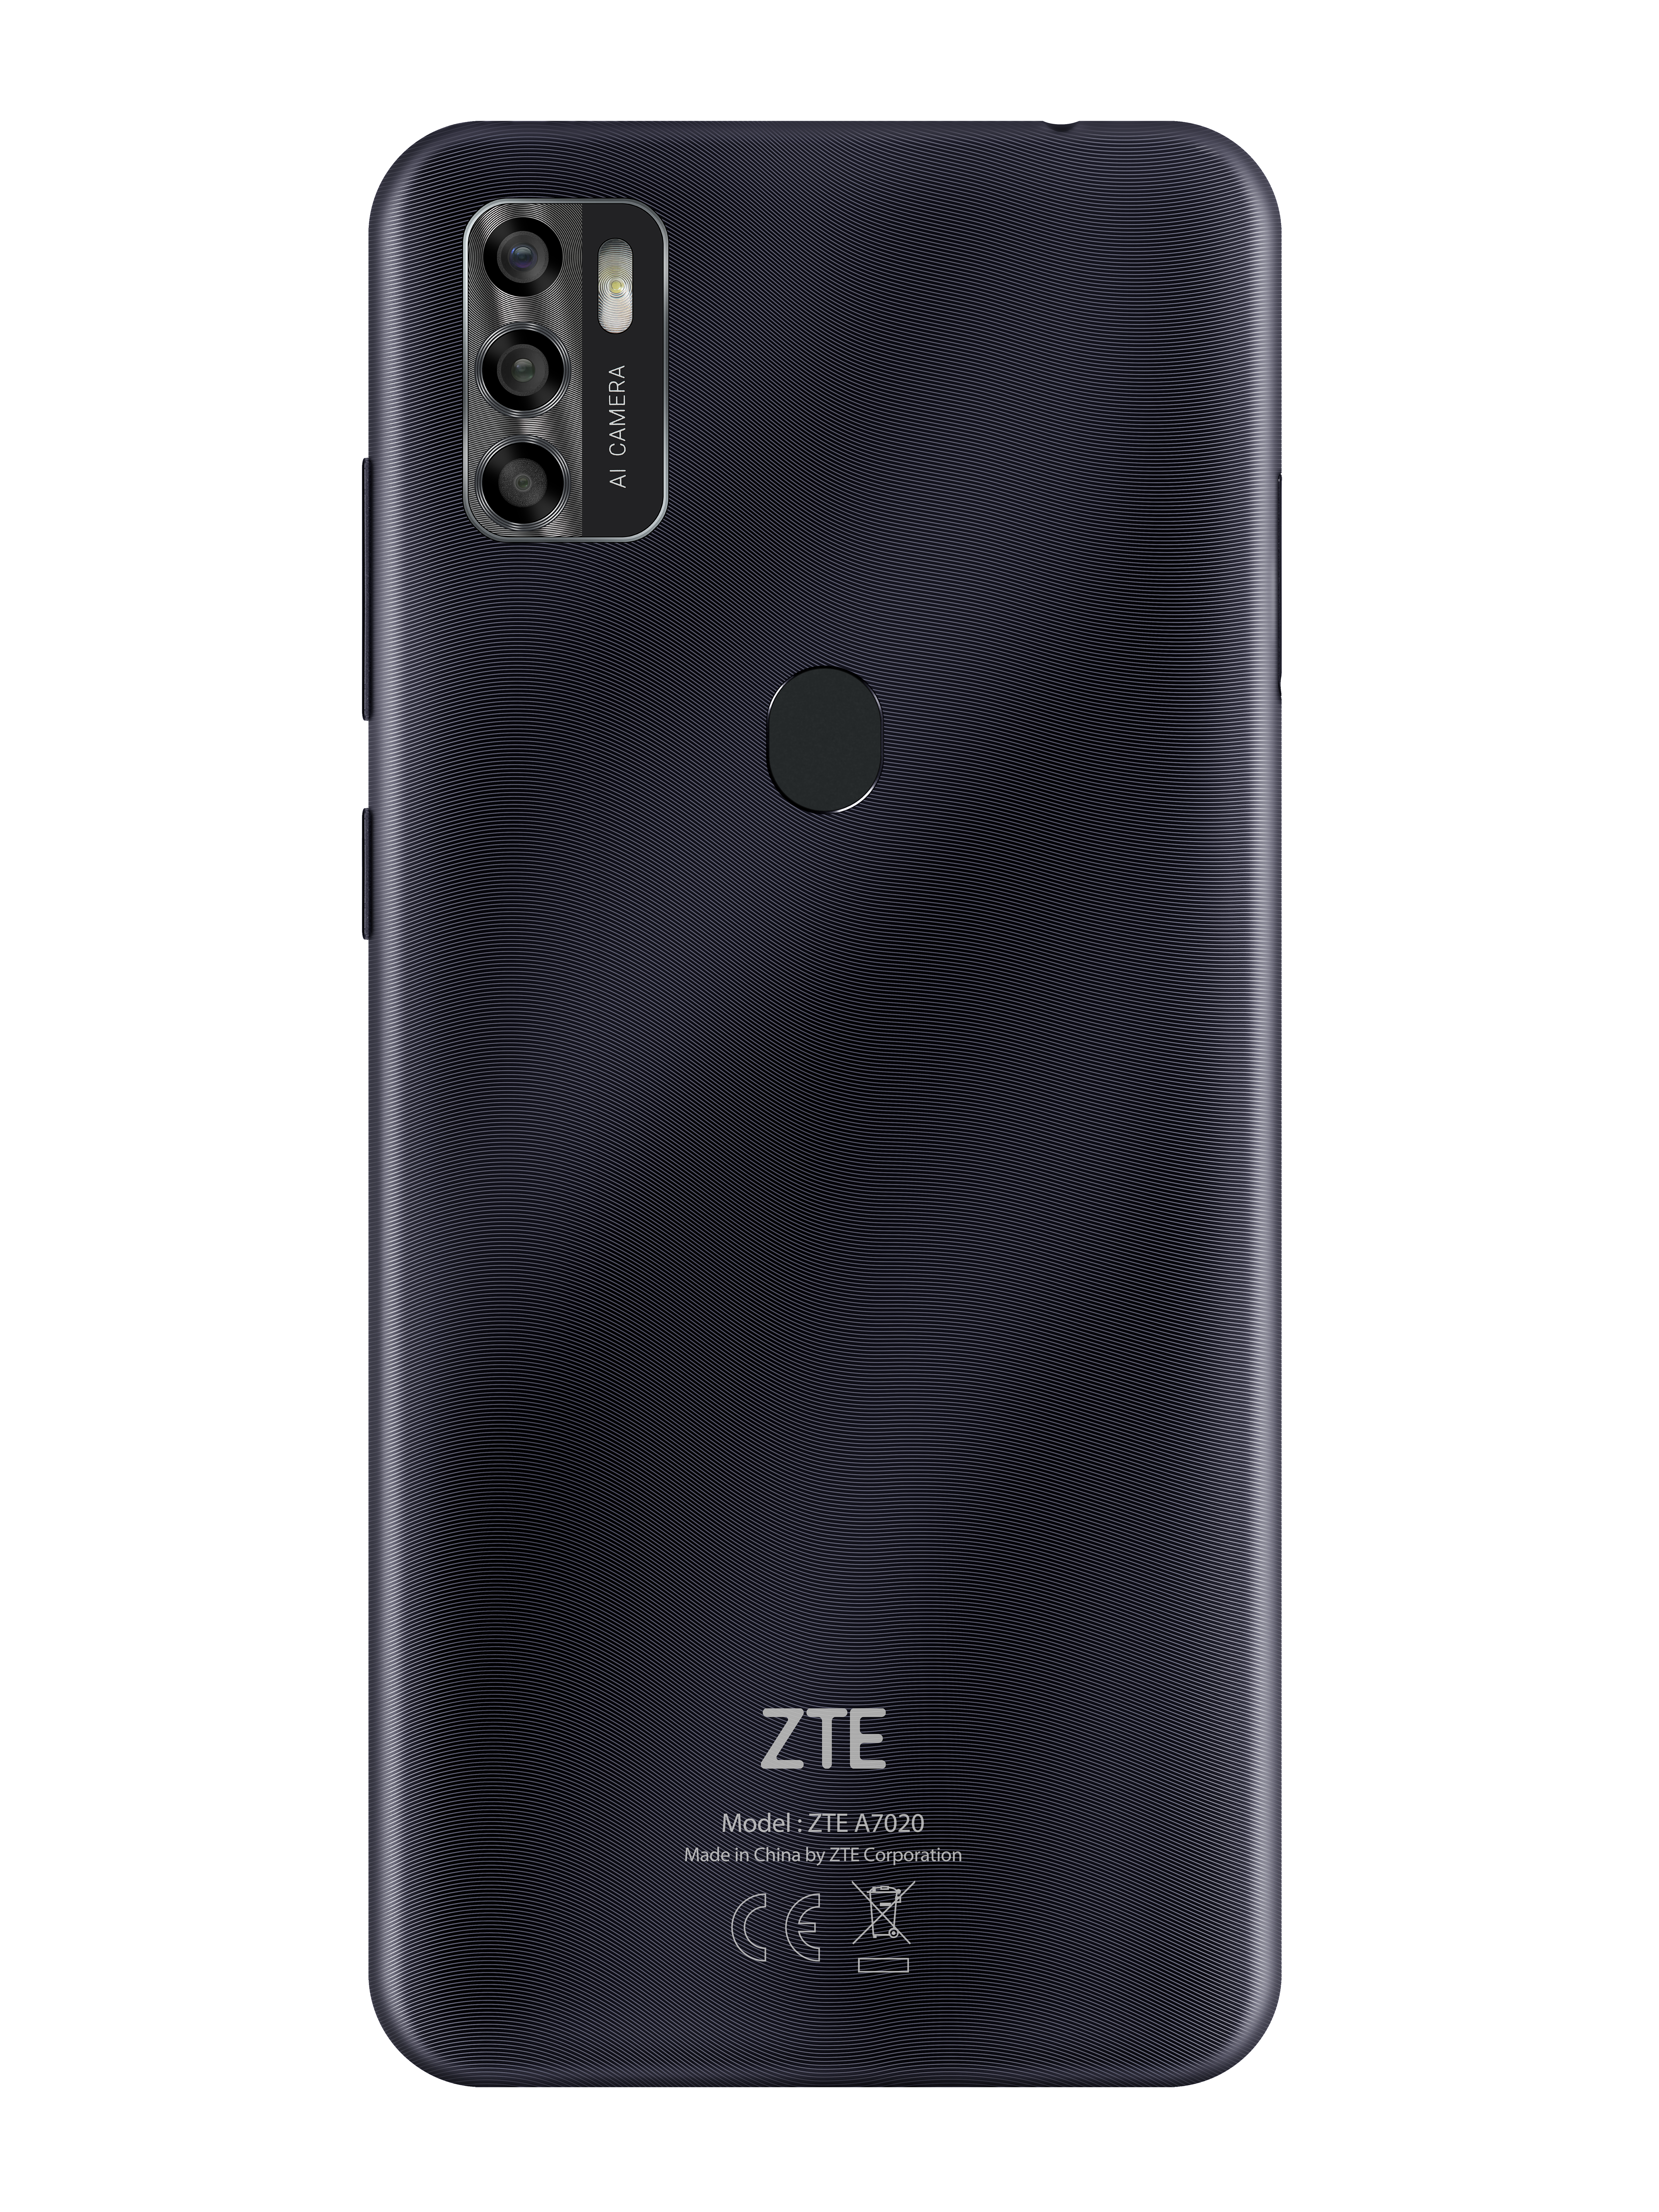 Schwarz SIM 64 GB A7s ZTE Dual 2020